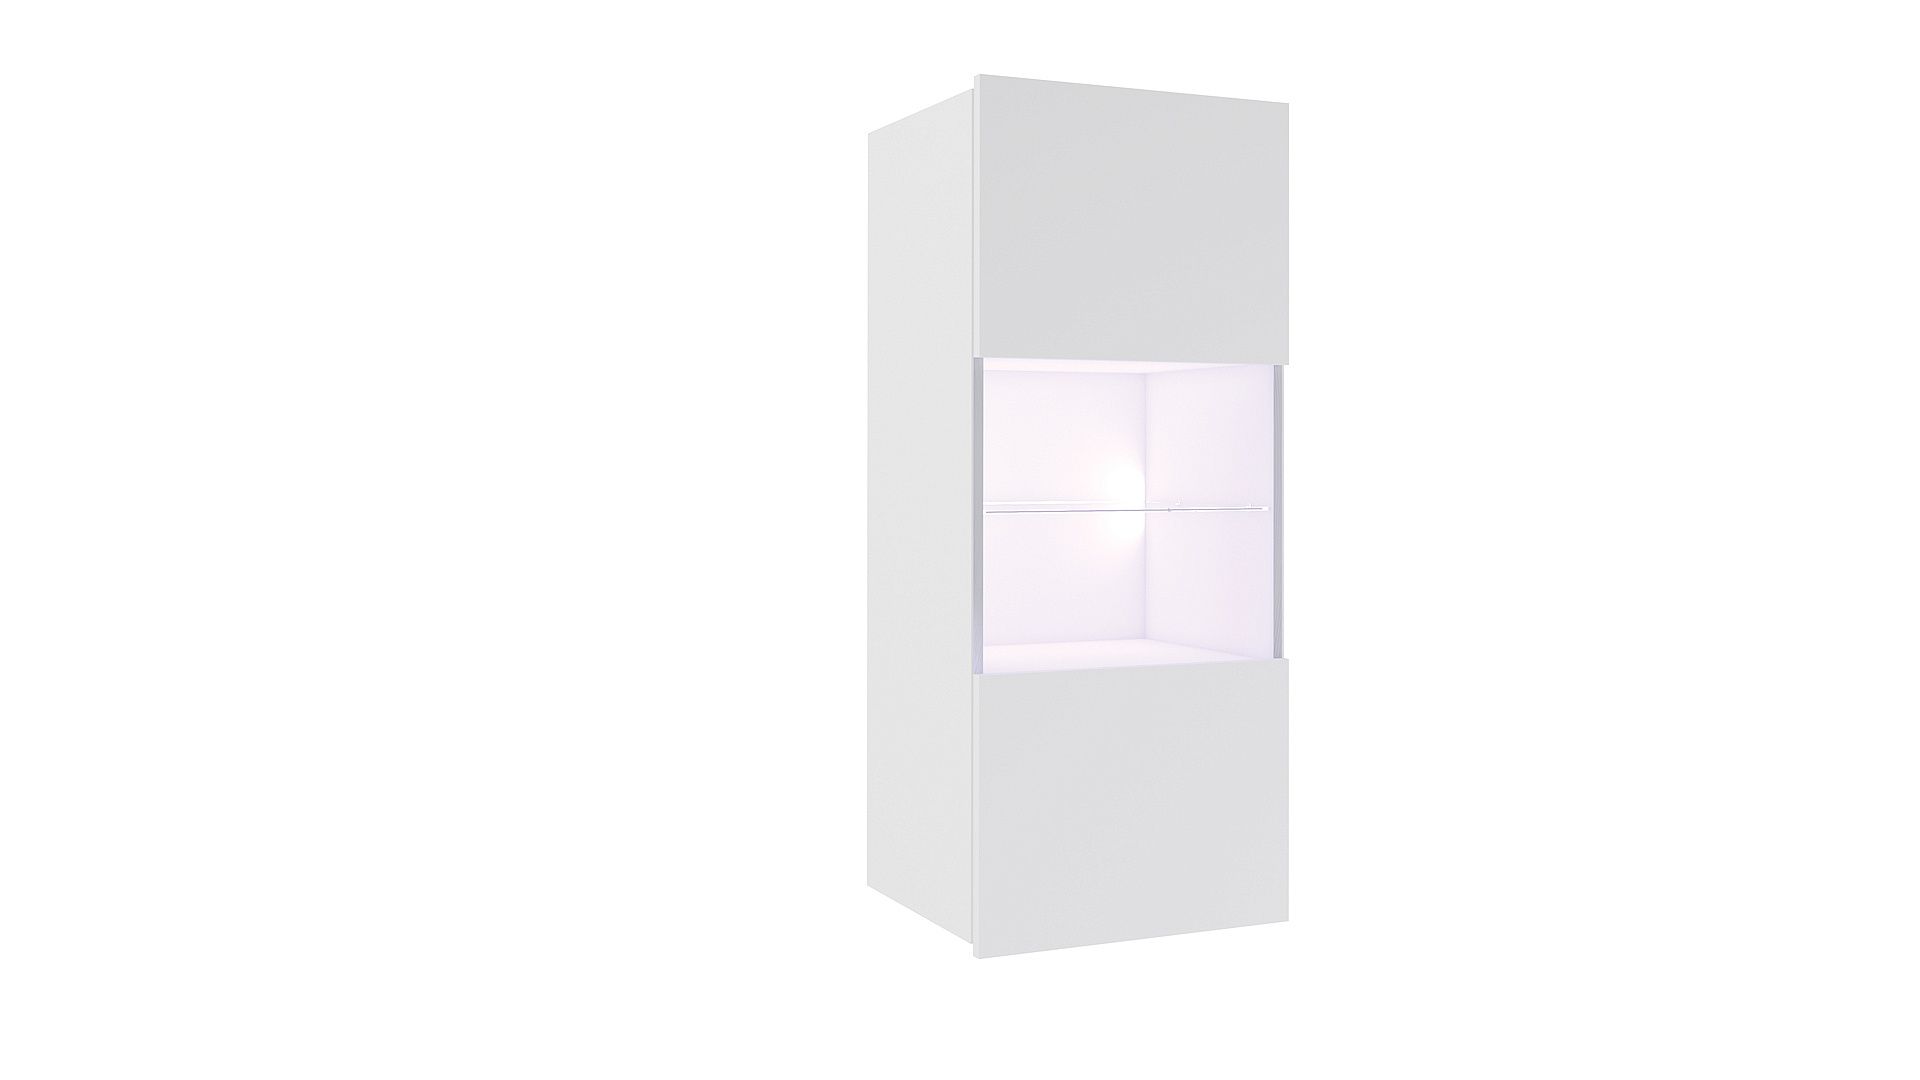 Závěsná vitrína BRINICA, 45x117x32, bílá/bílý lesk, + modré LED - Expedo s.r.o.